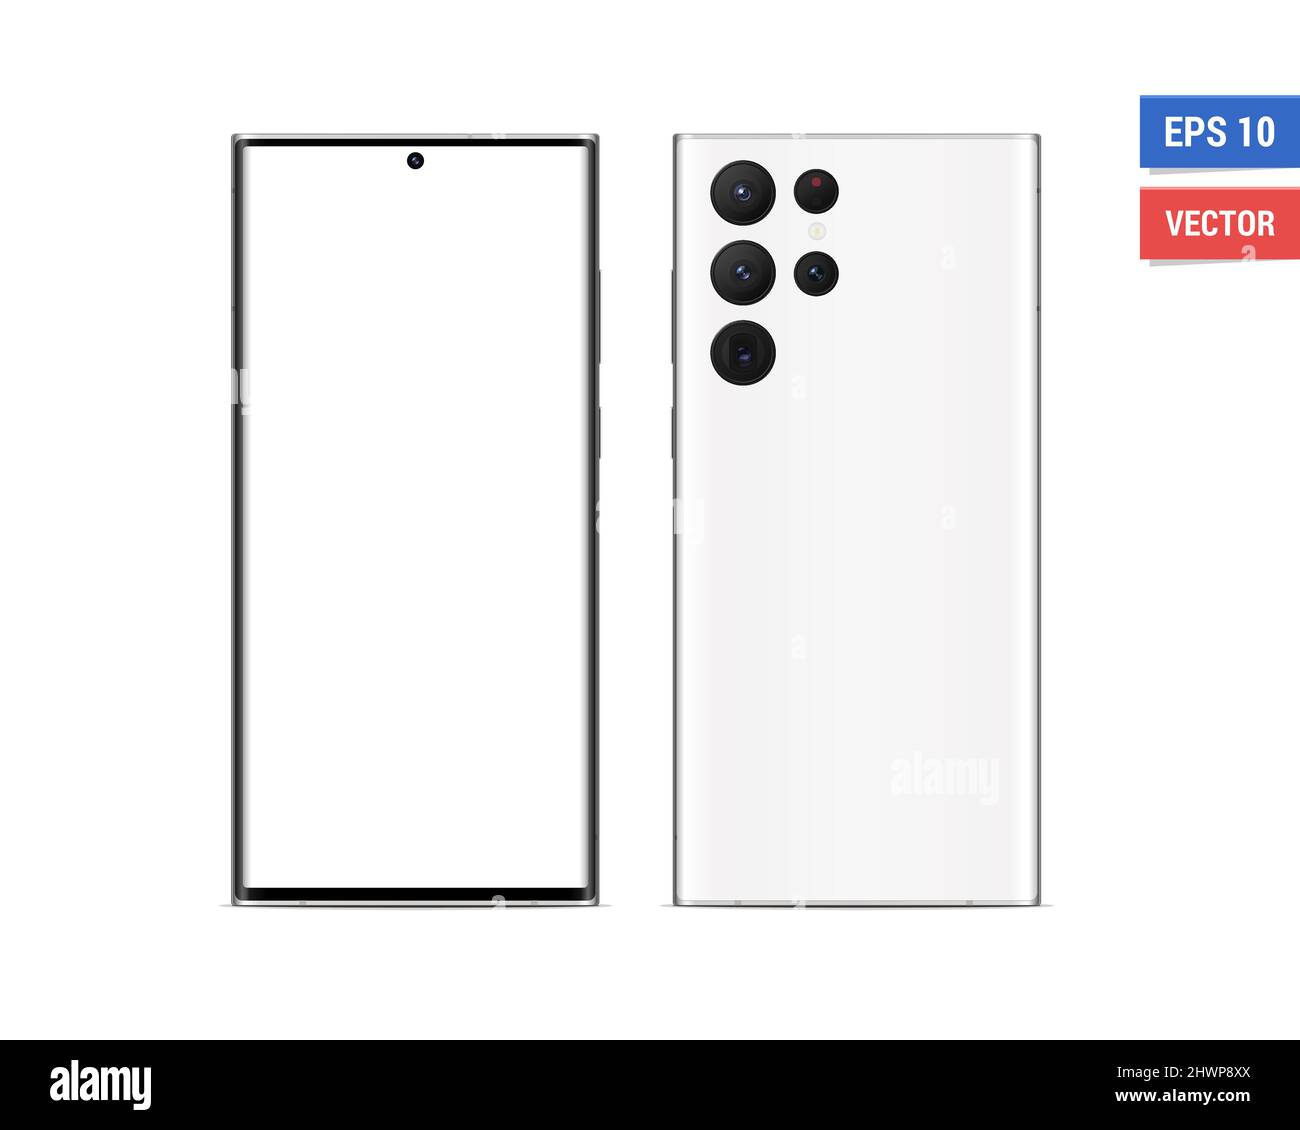 Hãy xem mẫu Samsung Galaxy S22 Ultra giả lập đầy ấn tượng này để biết được thiết kế siêu sang trọng, hiện đại của chiếc điện thoại này trước khi nó chính thức được đem ra thị trường!